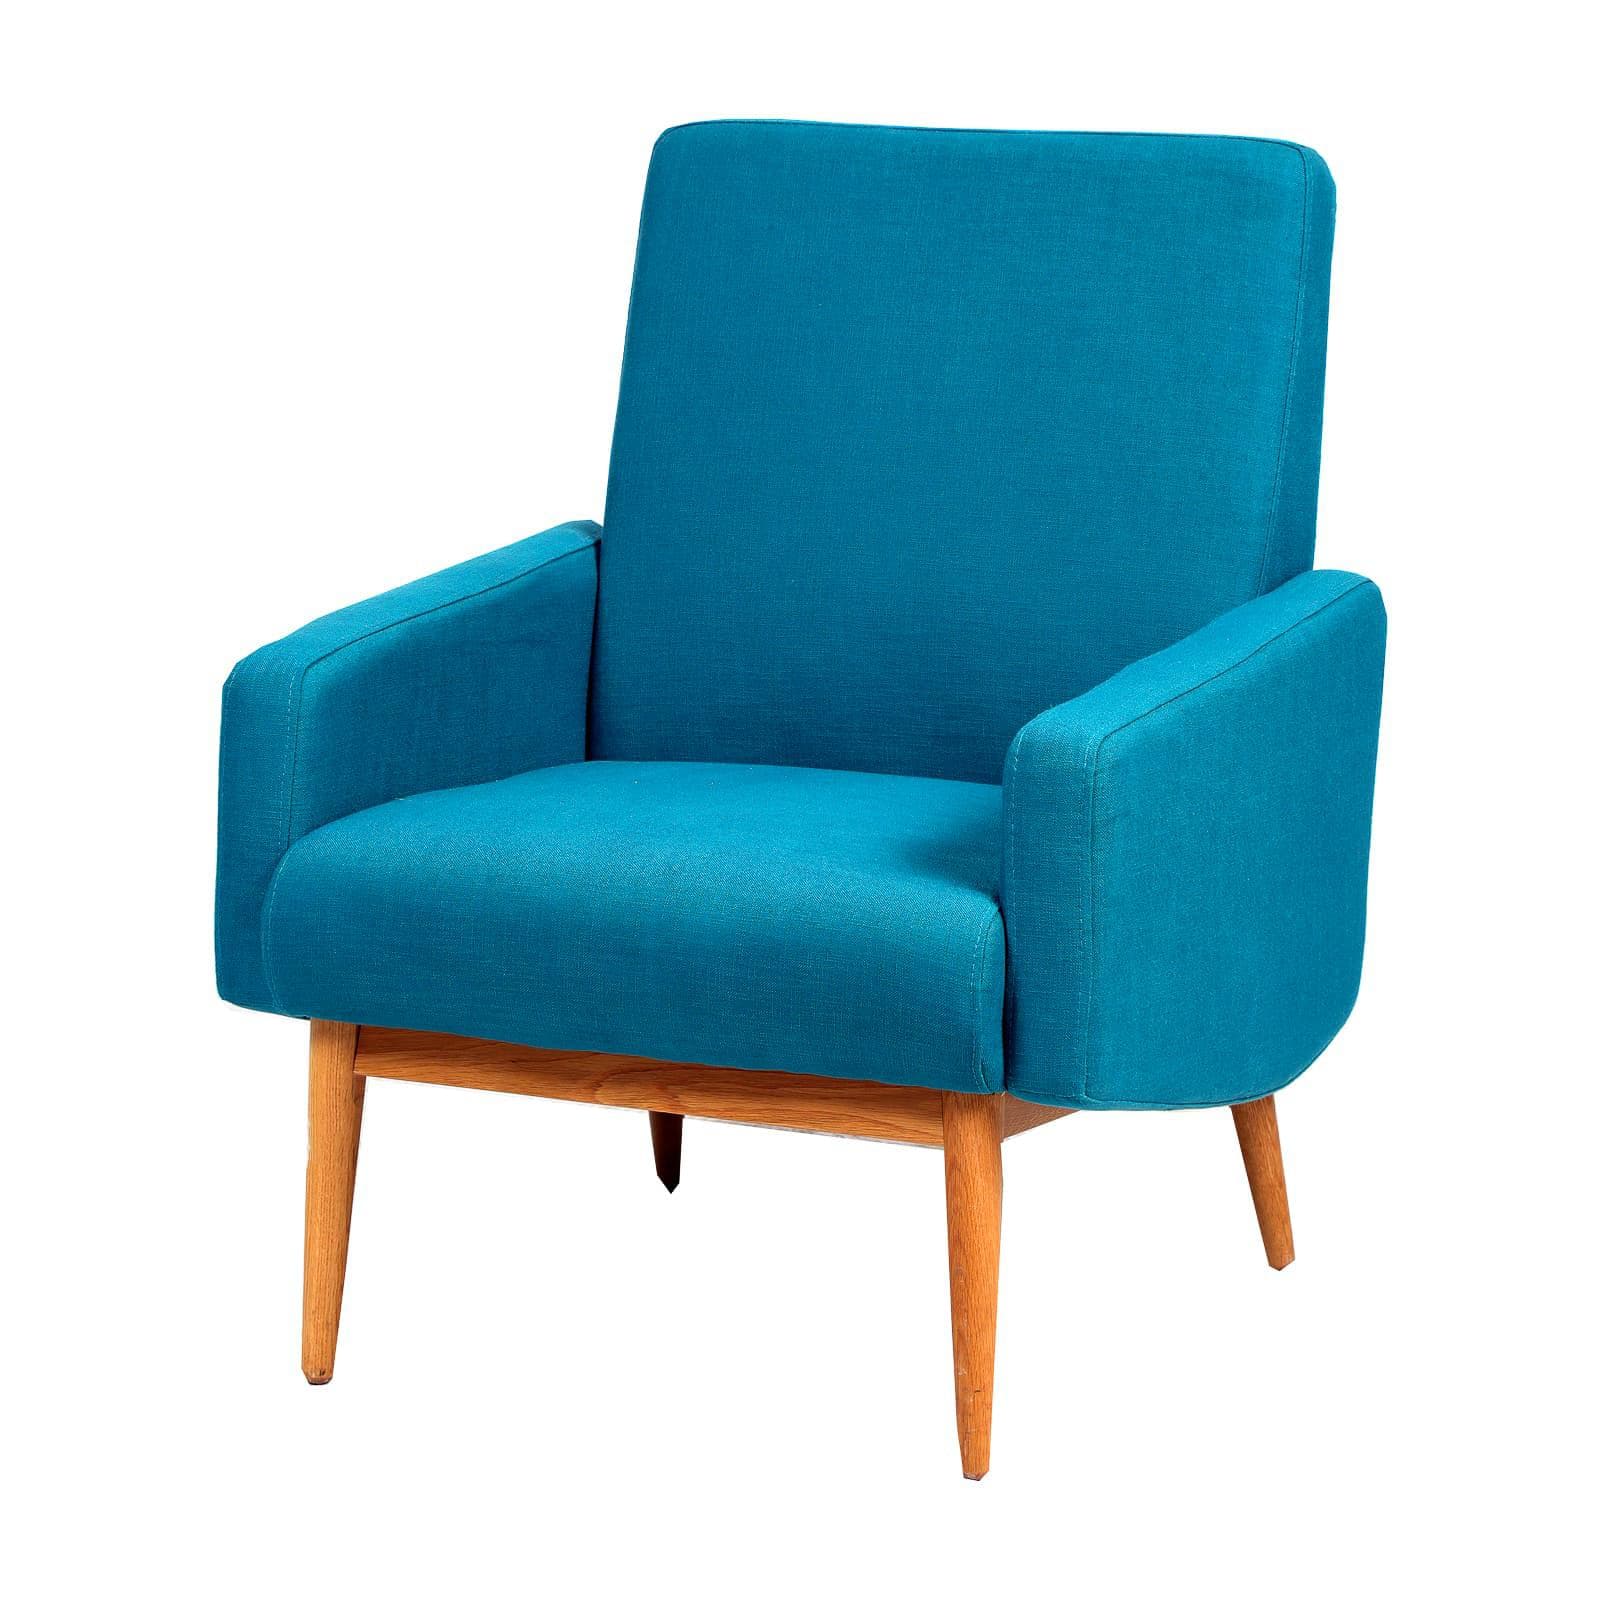 Fauteuil design esprit années 50 bleu - occasion - 92 x 73 x 65 cm-Bluedigo